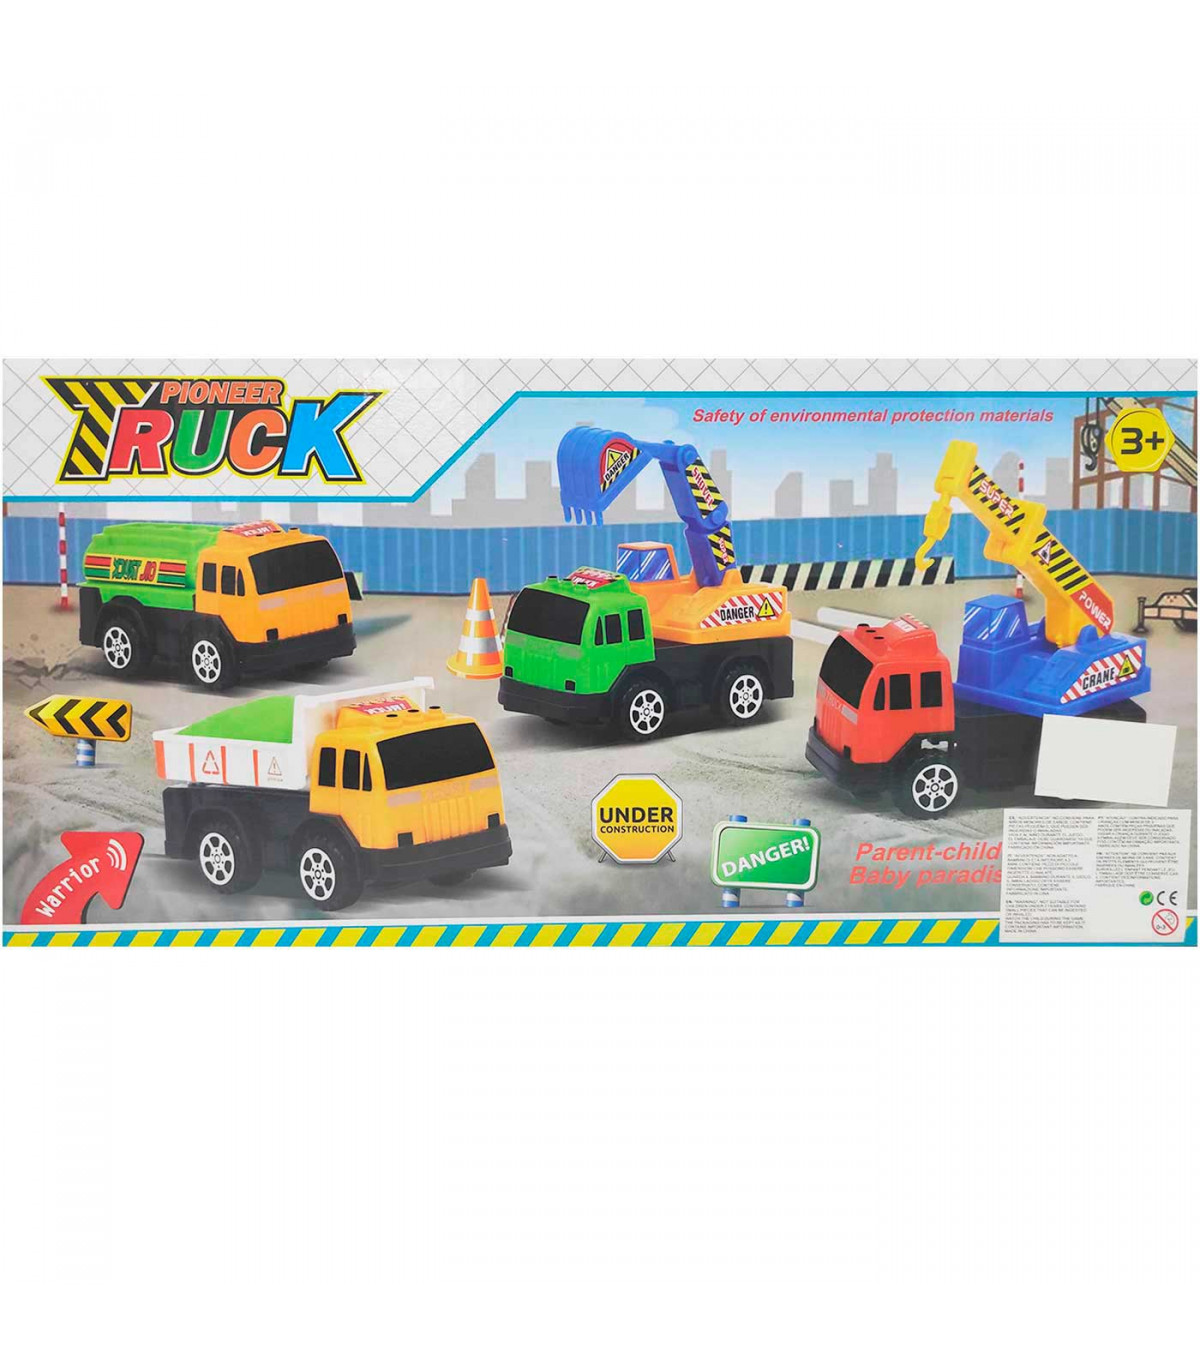 Pack de camiones de obra retro y a fricción, juguete de construcción, coches para niños, dimensiones de vehículo 6